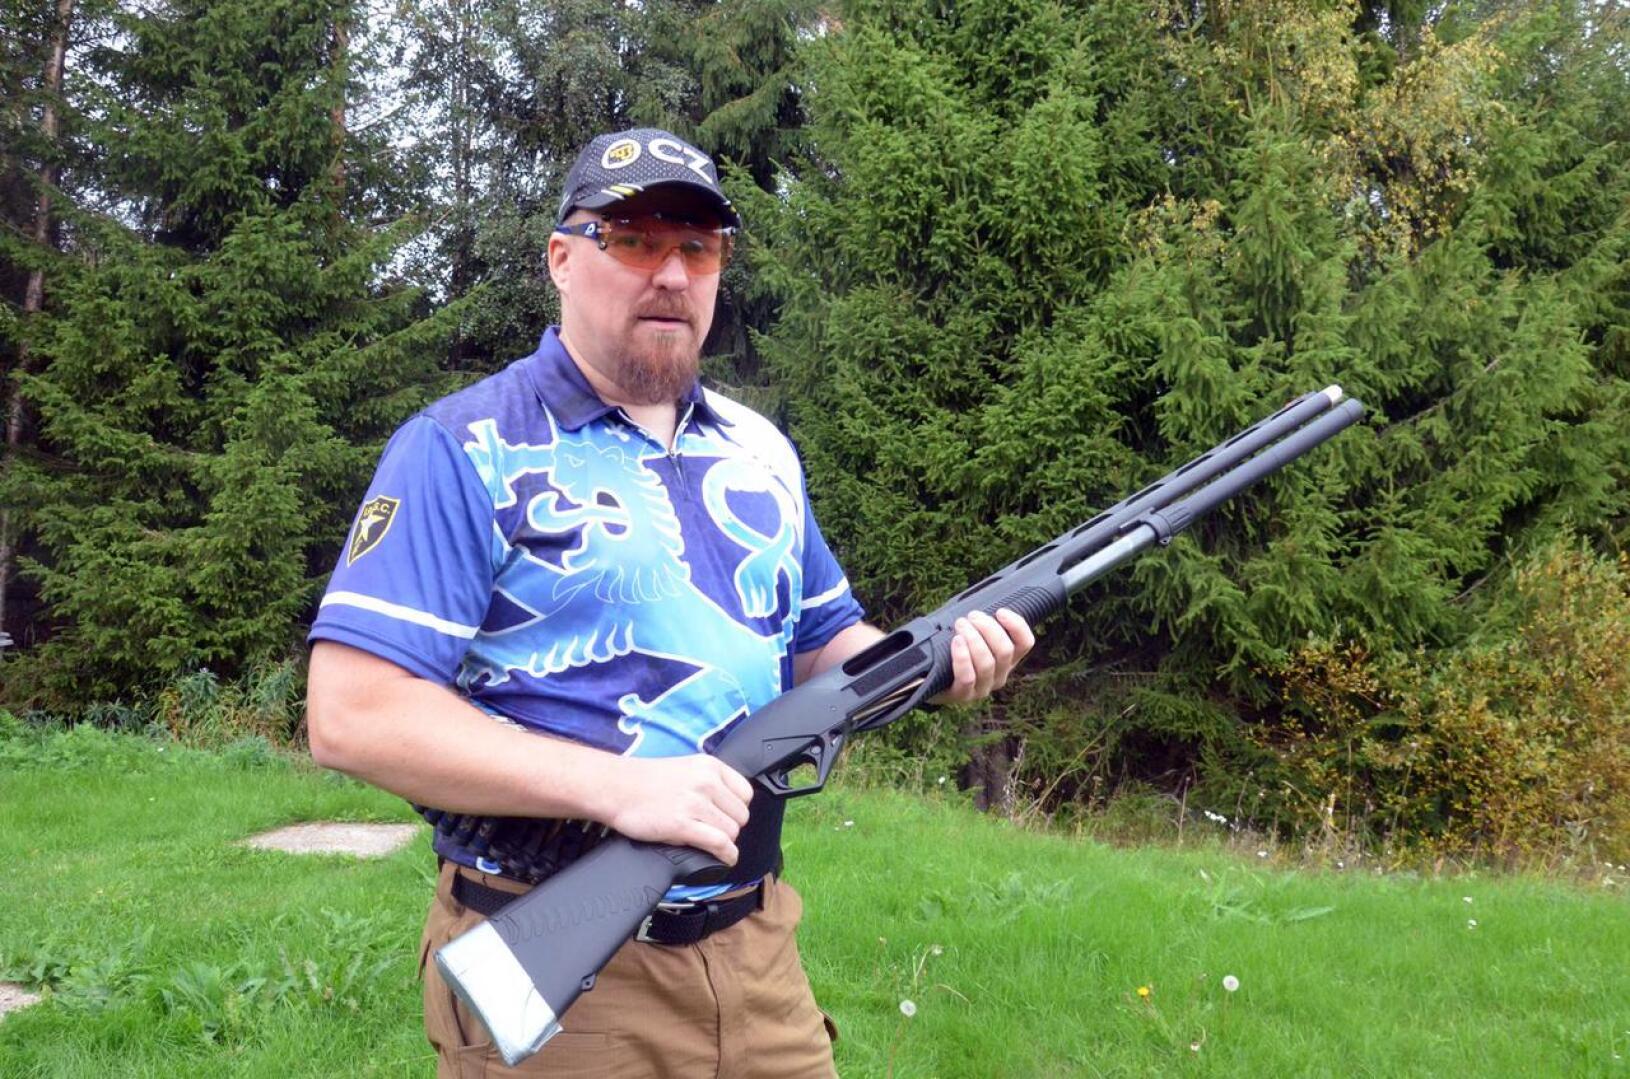 Kokkolan Urheiluampujia edustavan Juha Lukkarilan aseena on pumppuhaulikko. Practicalissa voi kilpailla myös pistoolilla tai kiväärillä.